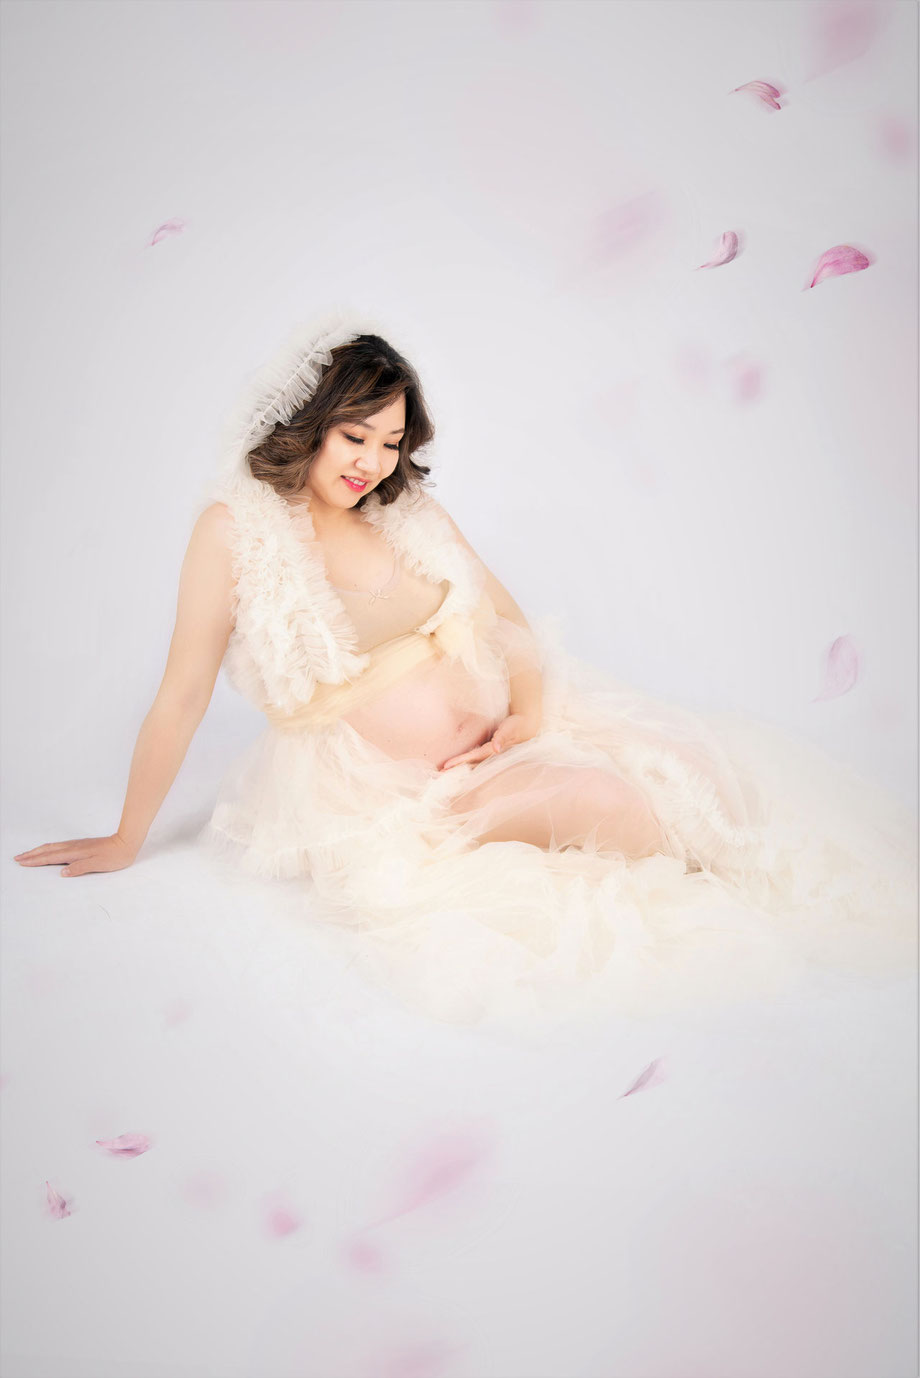 zwangere vrouw in jurk met vliegende blaadjes